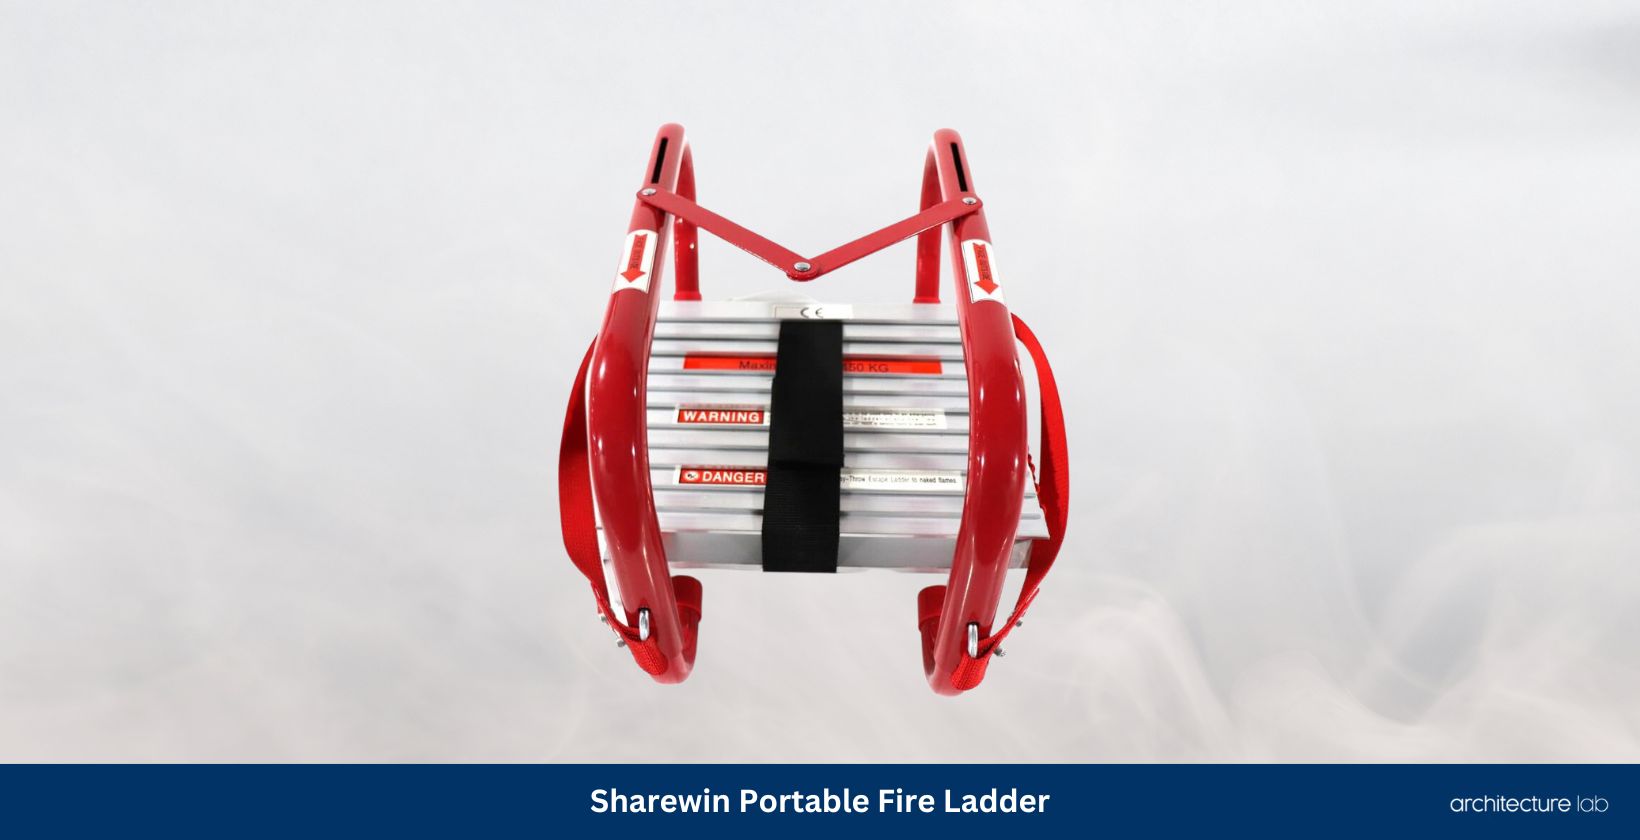 Sharewin portable fire ladder 2 storey 15